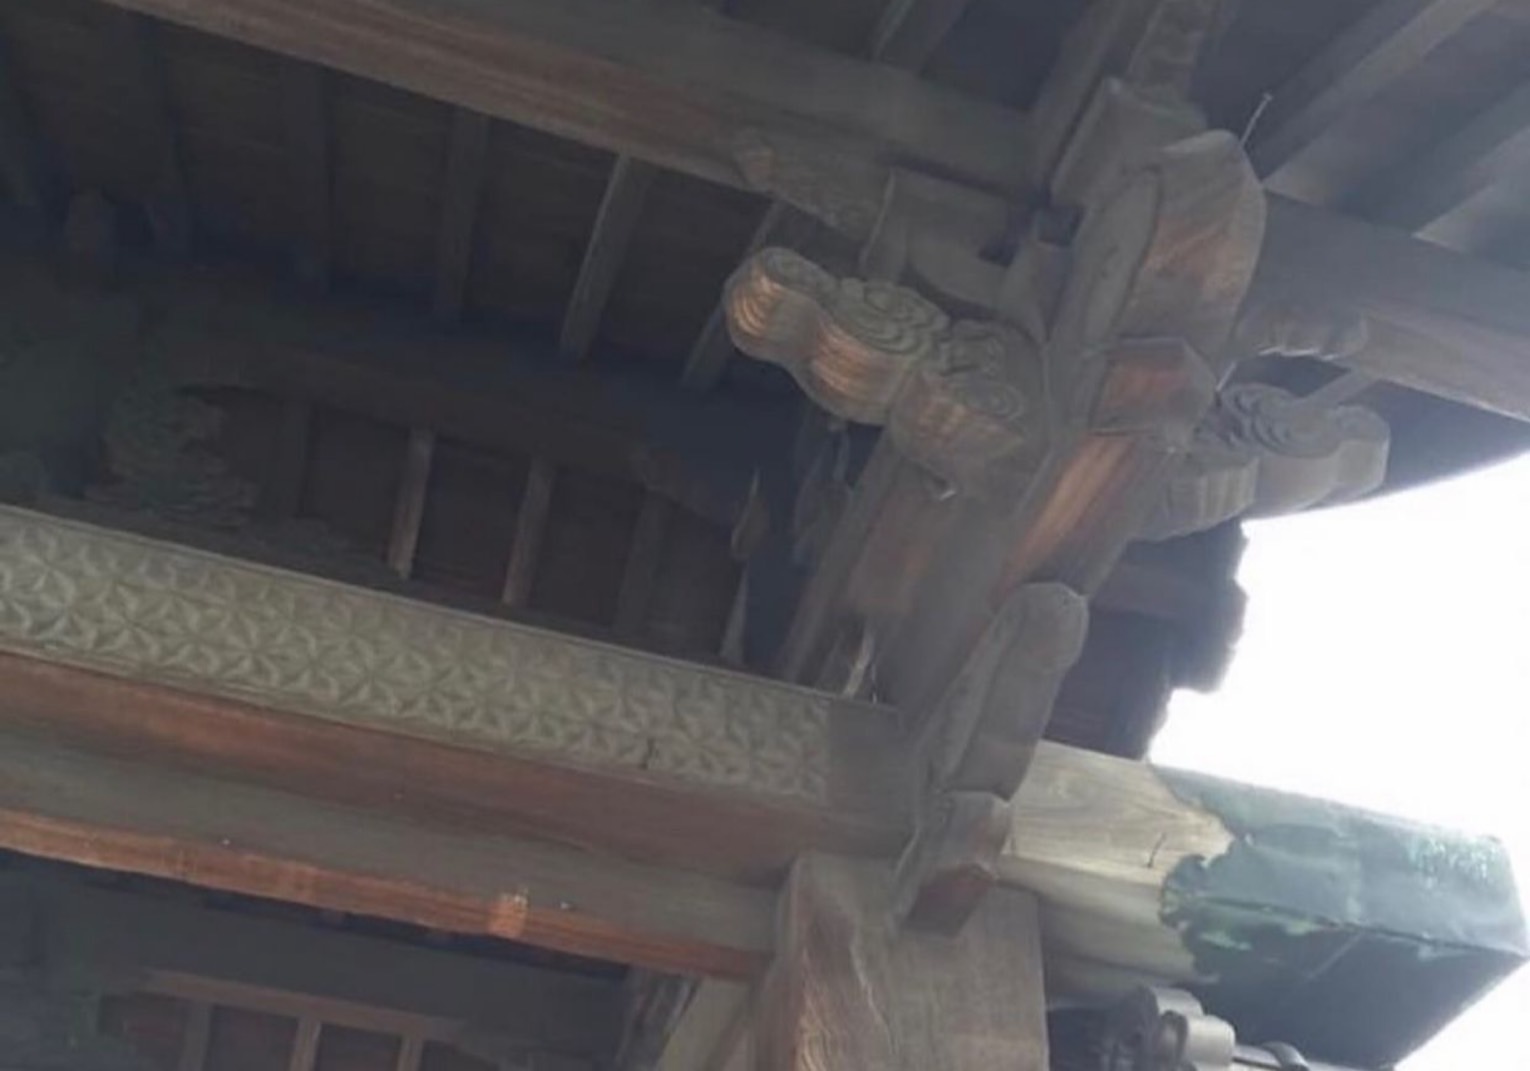 愛知県 安城市 雨漏り 雨漏り修理 屋根修理 漆喰 瓦工事 外装工事 内装工事 リフォーム工事 外壁塗装